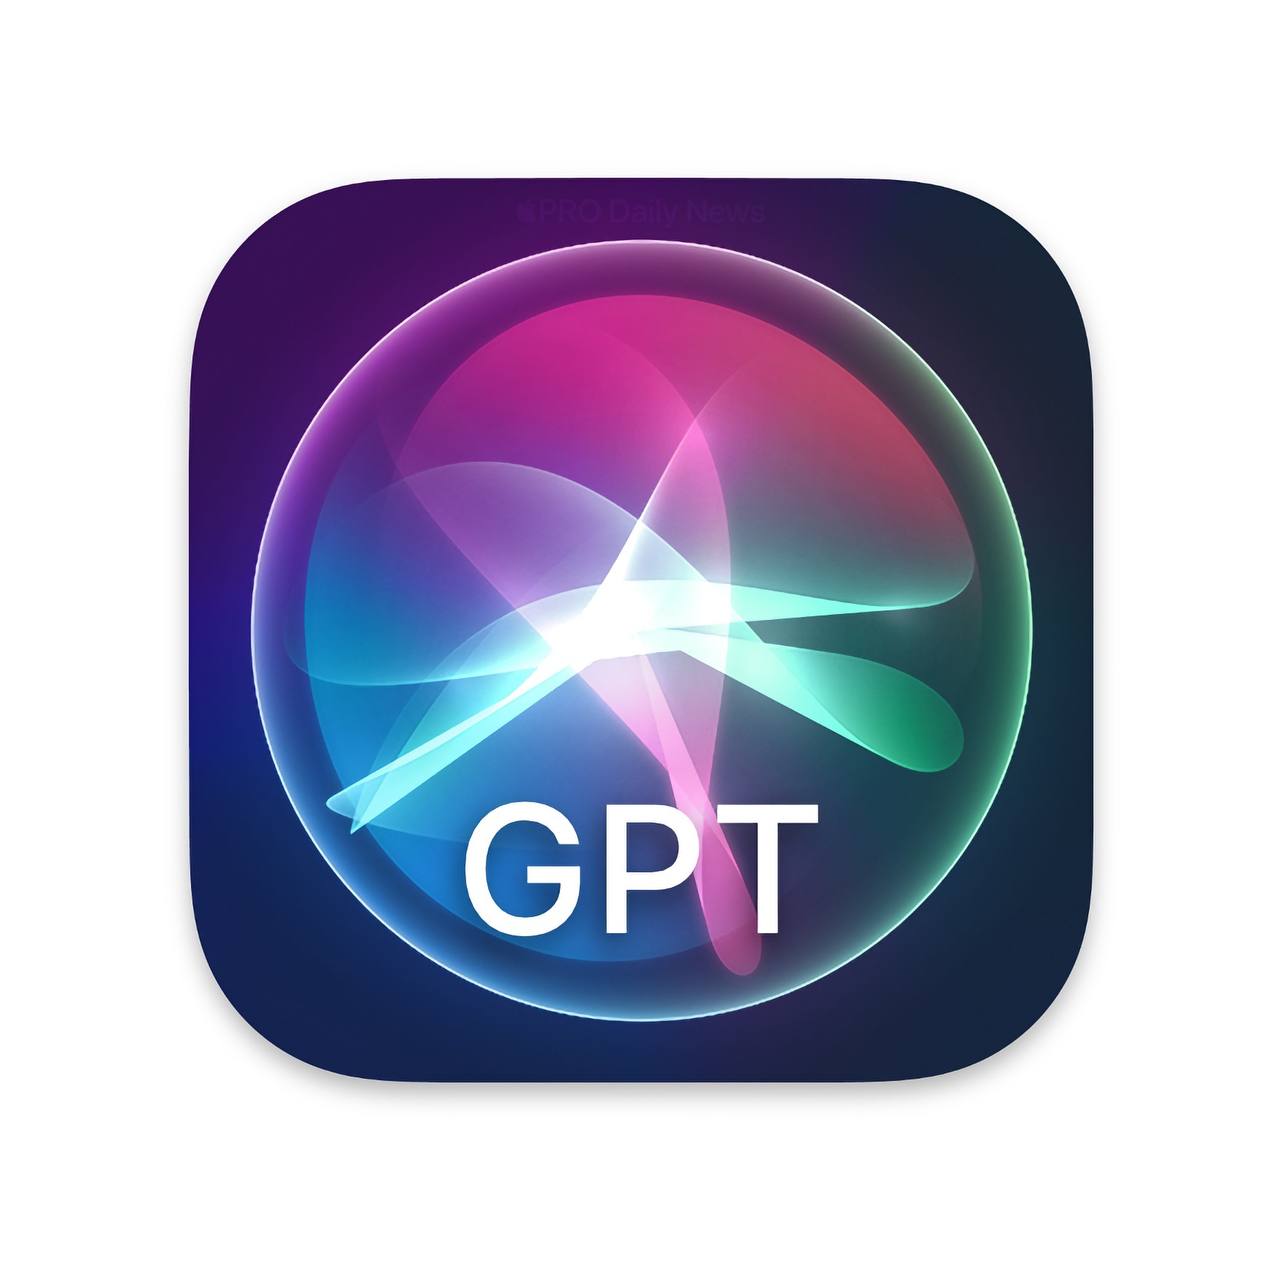 Хотелось бы увидеть новый GPT от Apple встроенный в Siri, это было бы шикарным развитием голосового ассистента